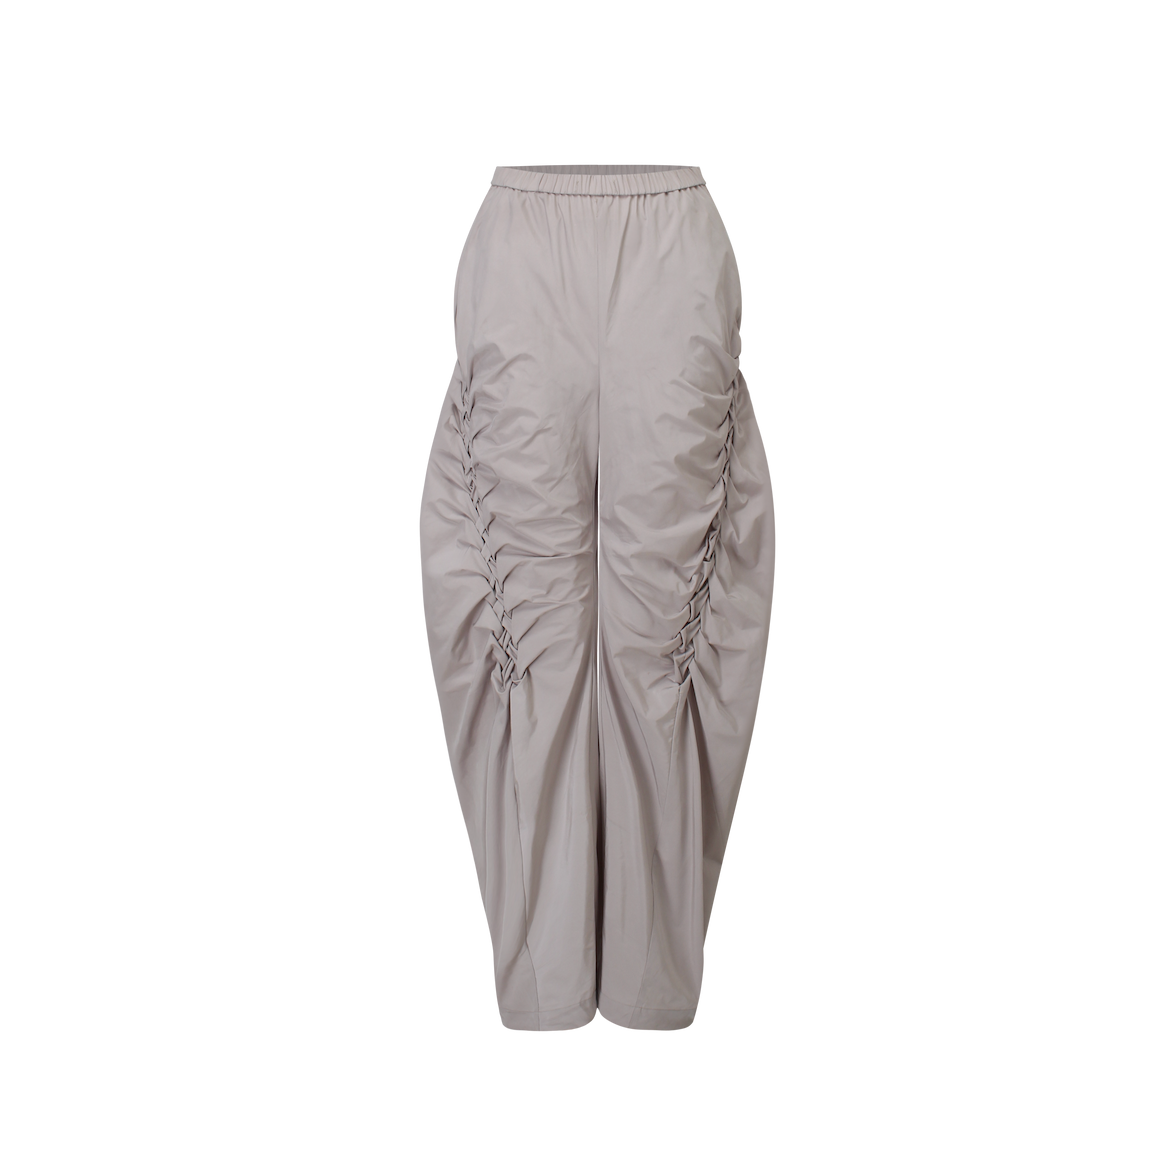 Unisex Khaki Grey Handcrafted Smocking Trousers